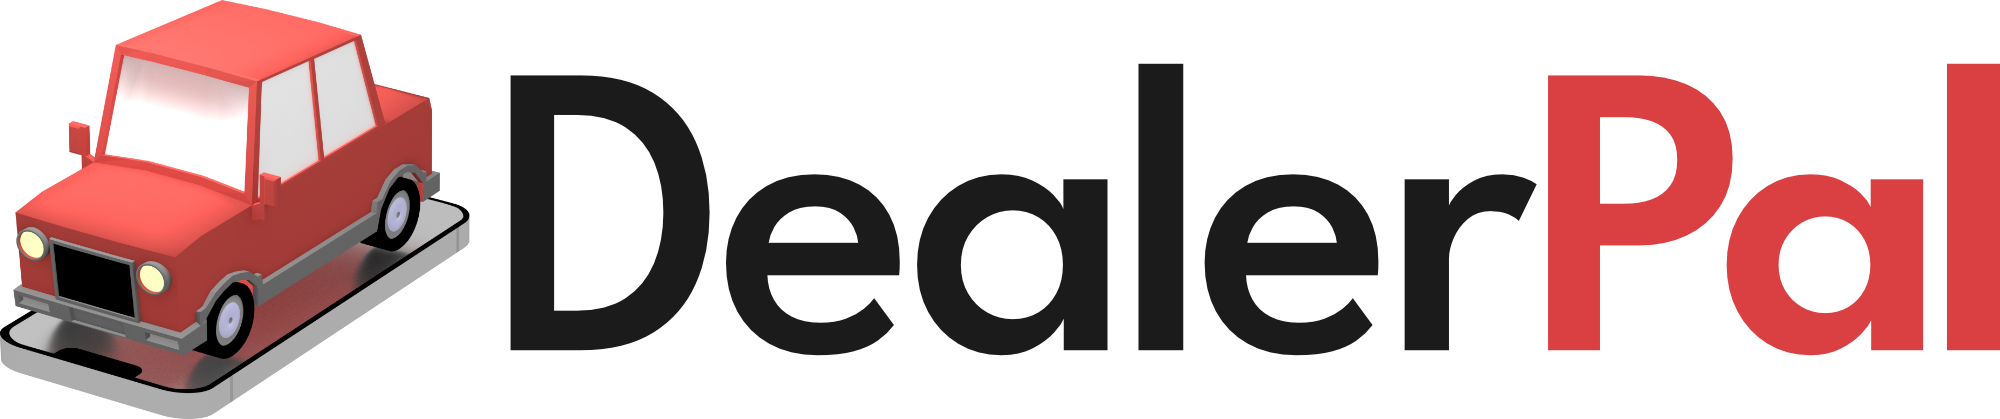 Dealerpal logo - click to go home